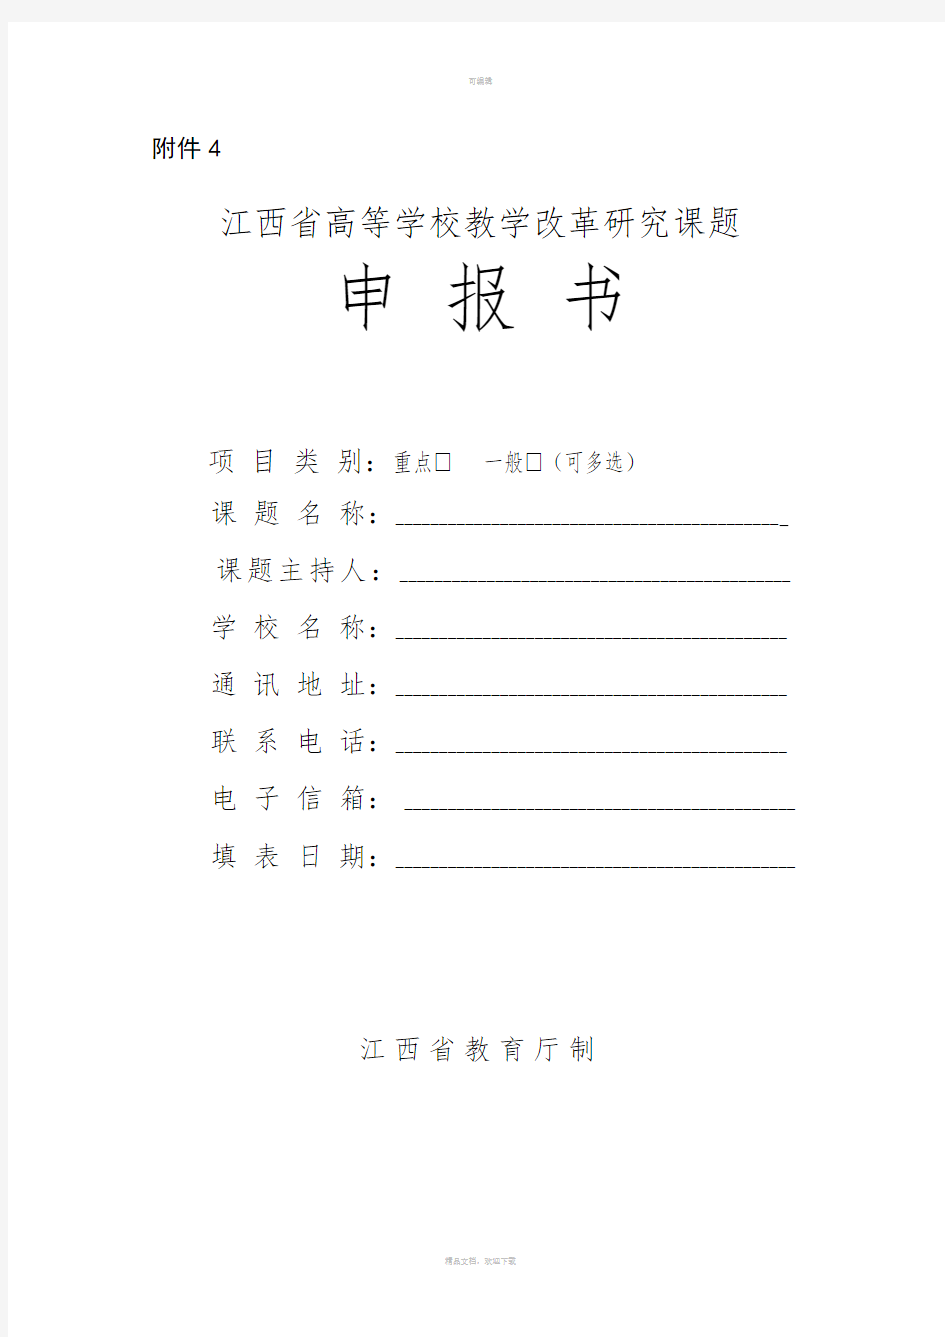 2.江西省高等学校教学改革研究课题申报书(含课题活页)